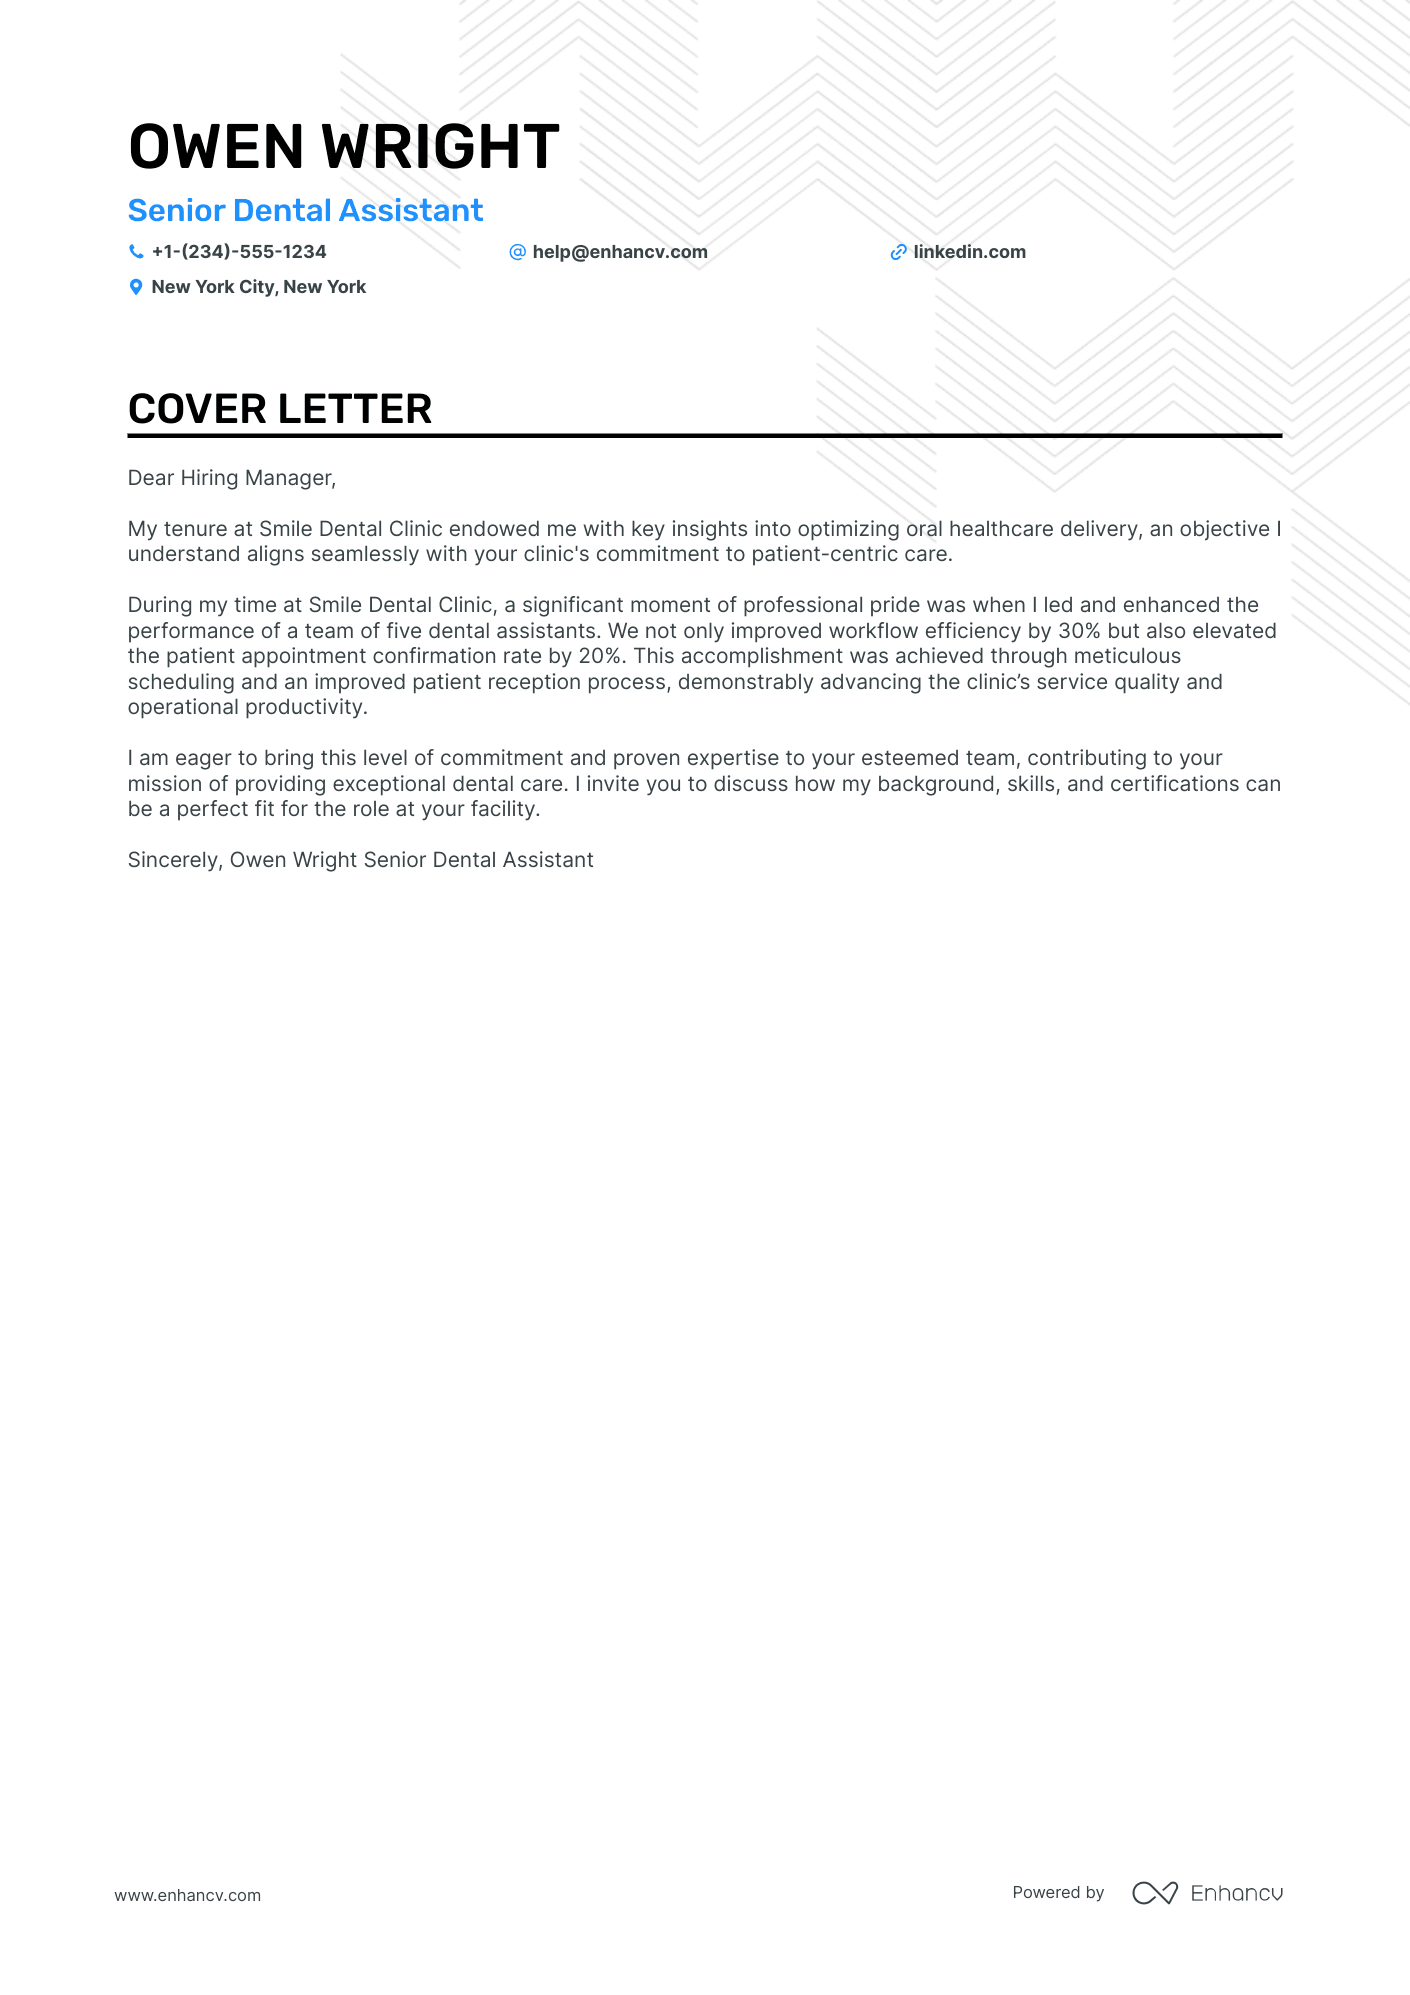 sample cover letter for dental assistant